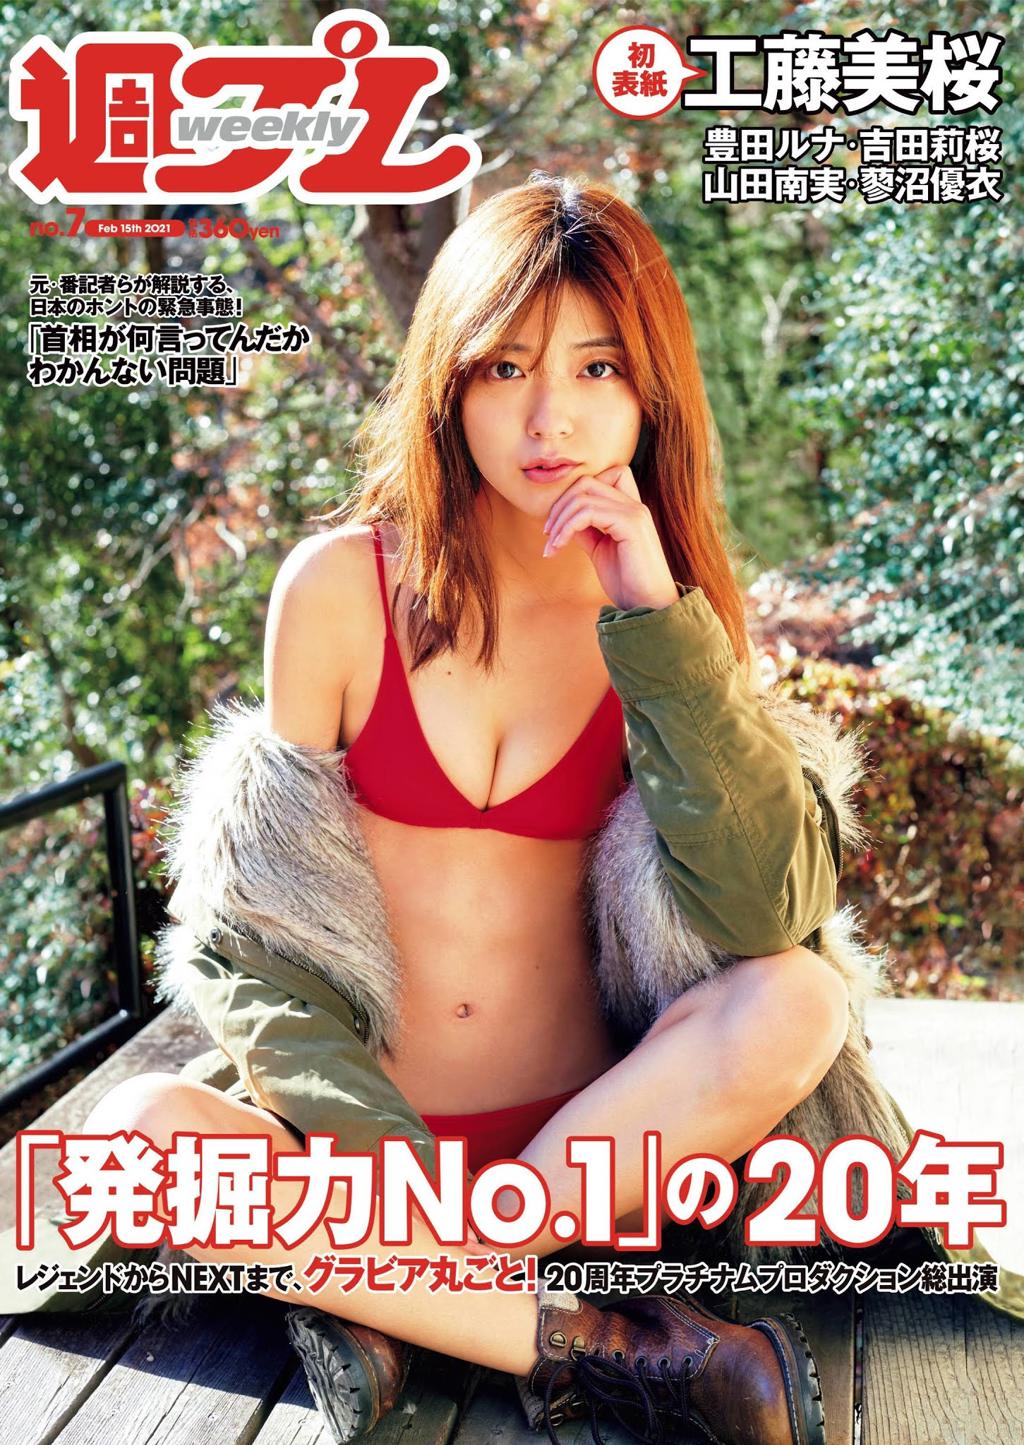 工藤美樱.甄选工藤美桜, Mio Kudo - Weekly Playboy, 20210215